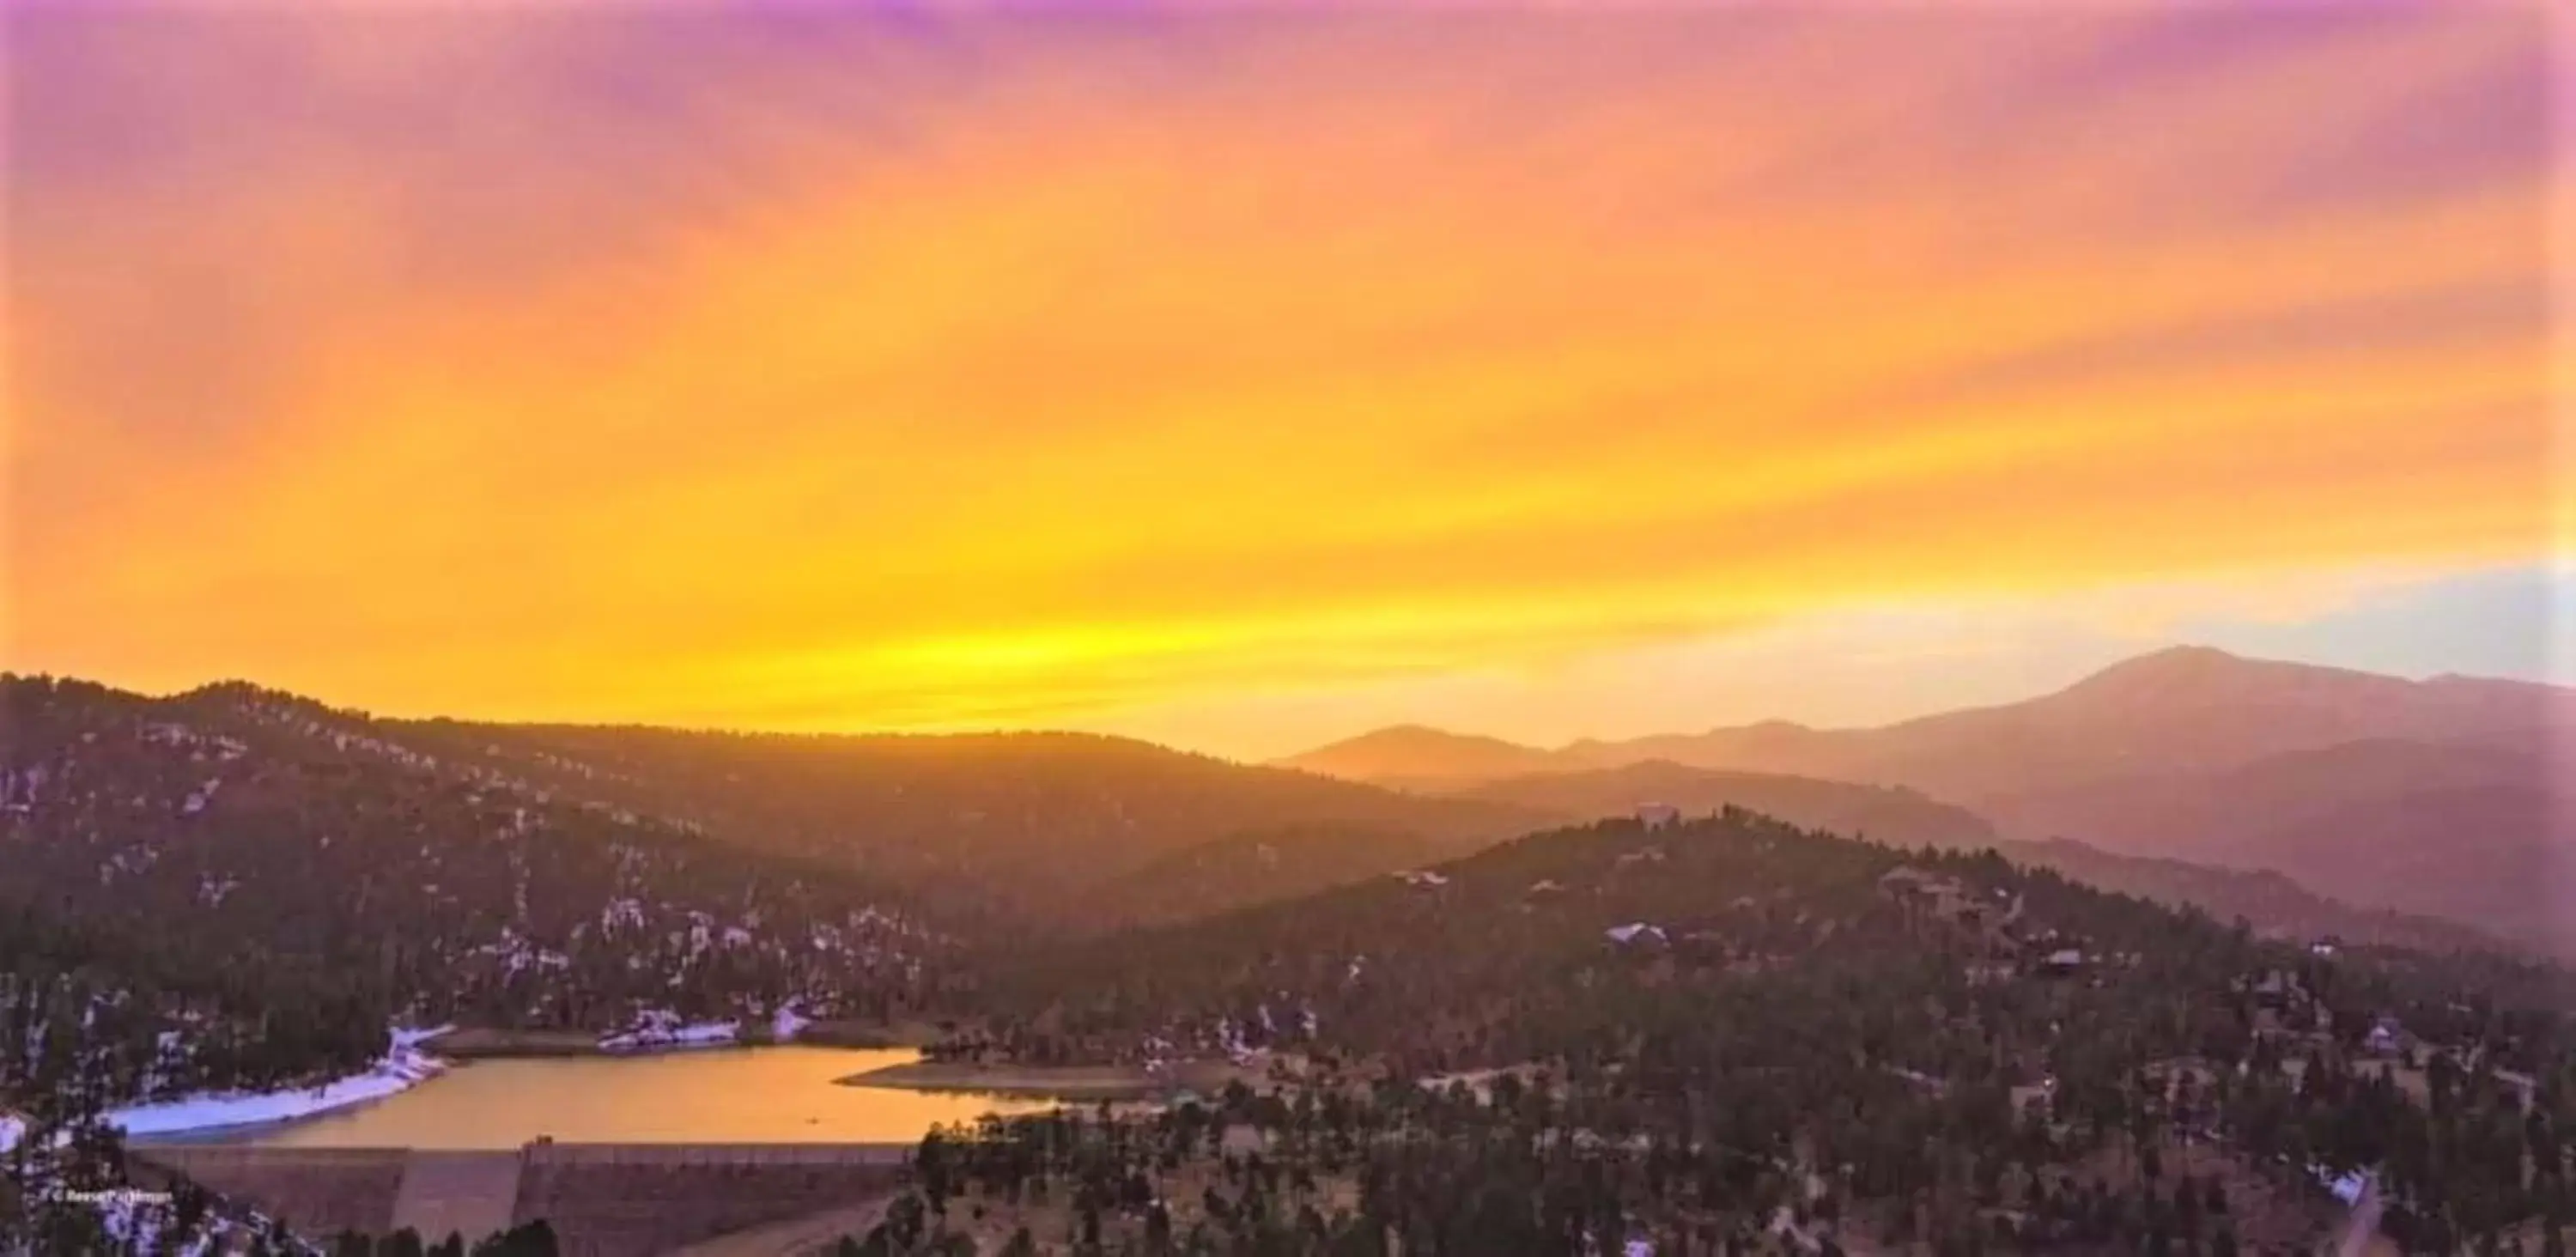 Sunrise, Mountain View in High Sierra Condominiums